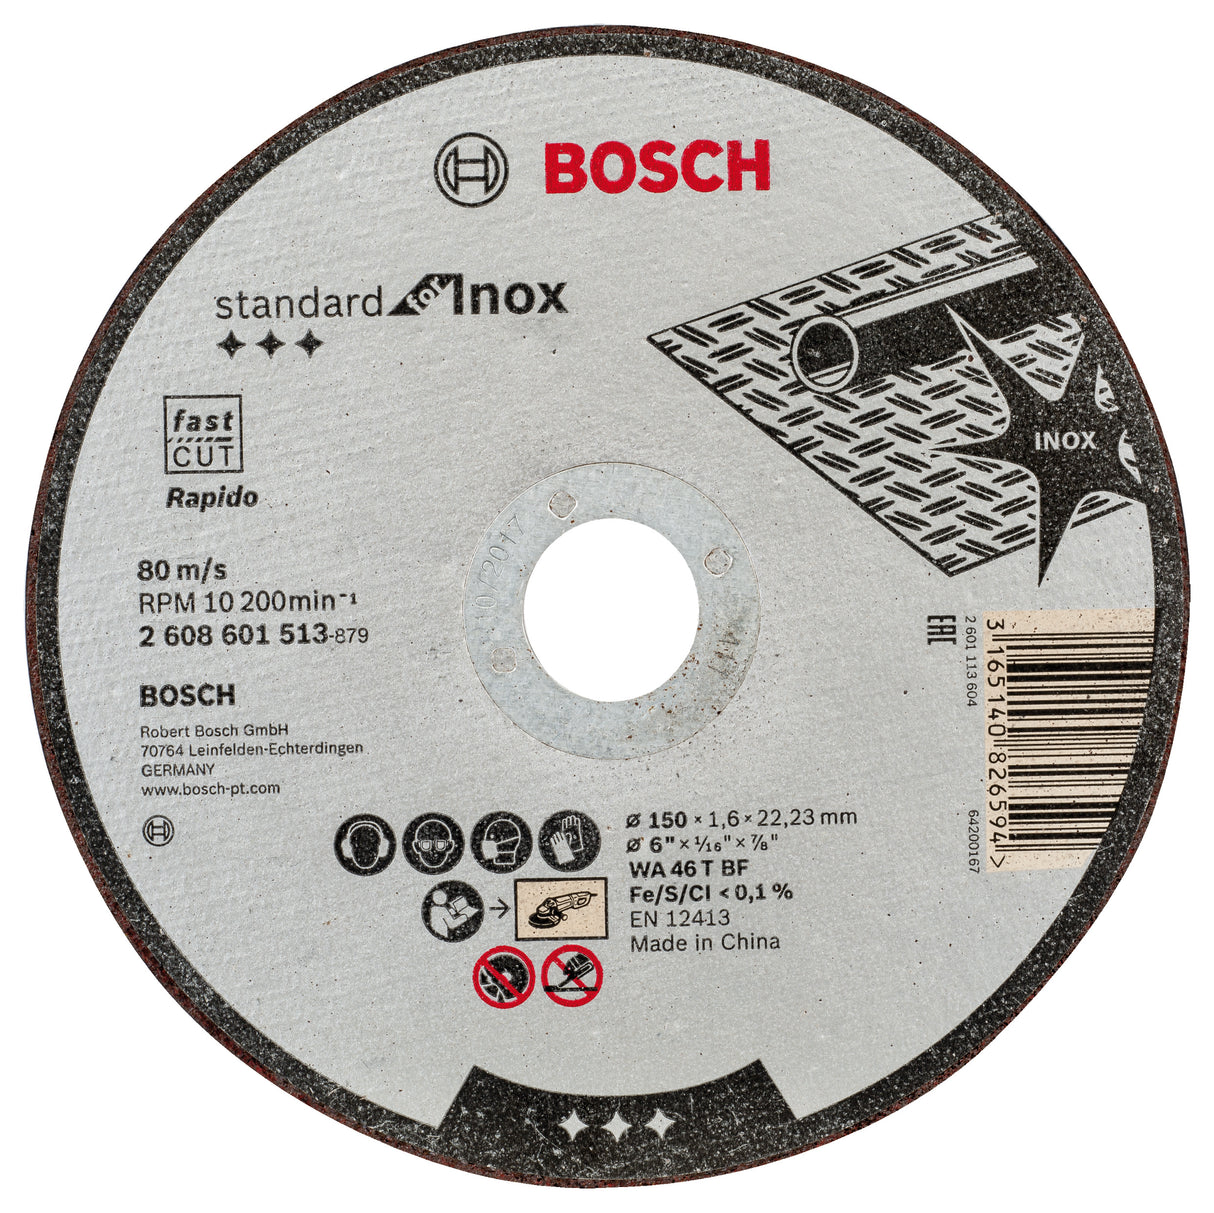 Bosch Professional Inox Straight Cutting Disc WA 46 T BF - 150mm x 22.23mm x 1.6mm